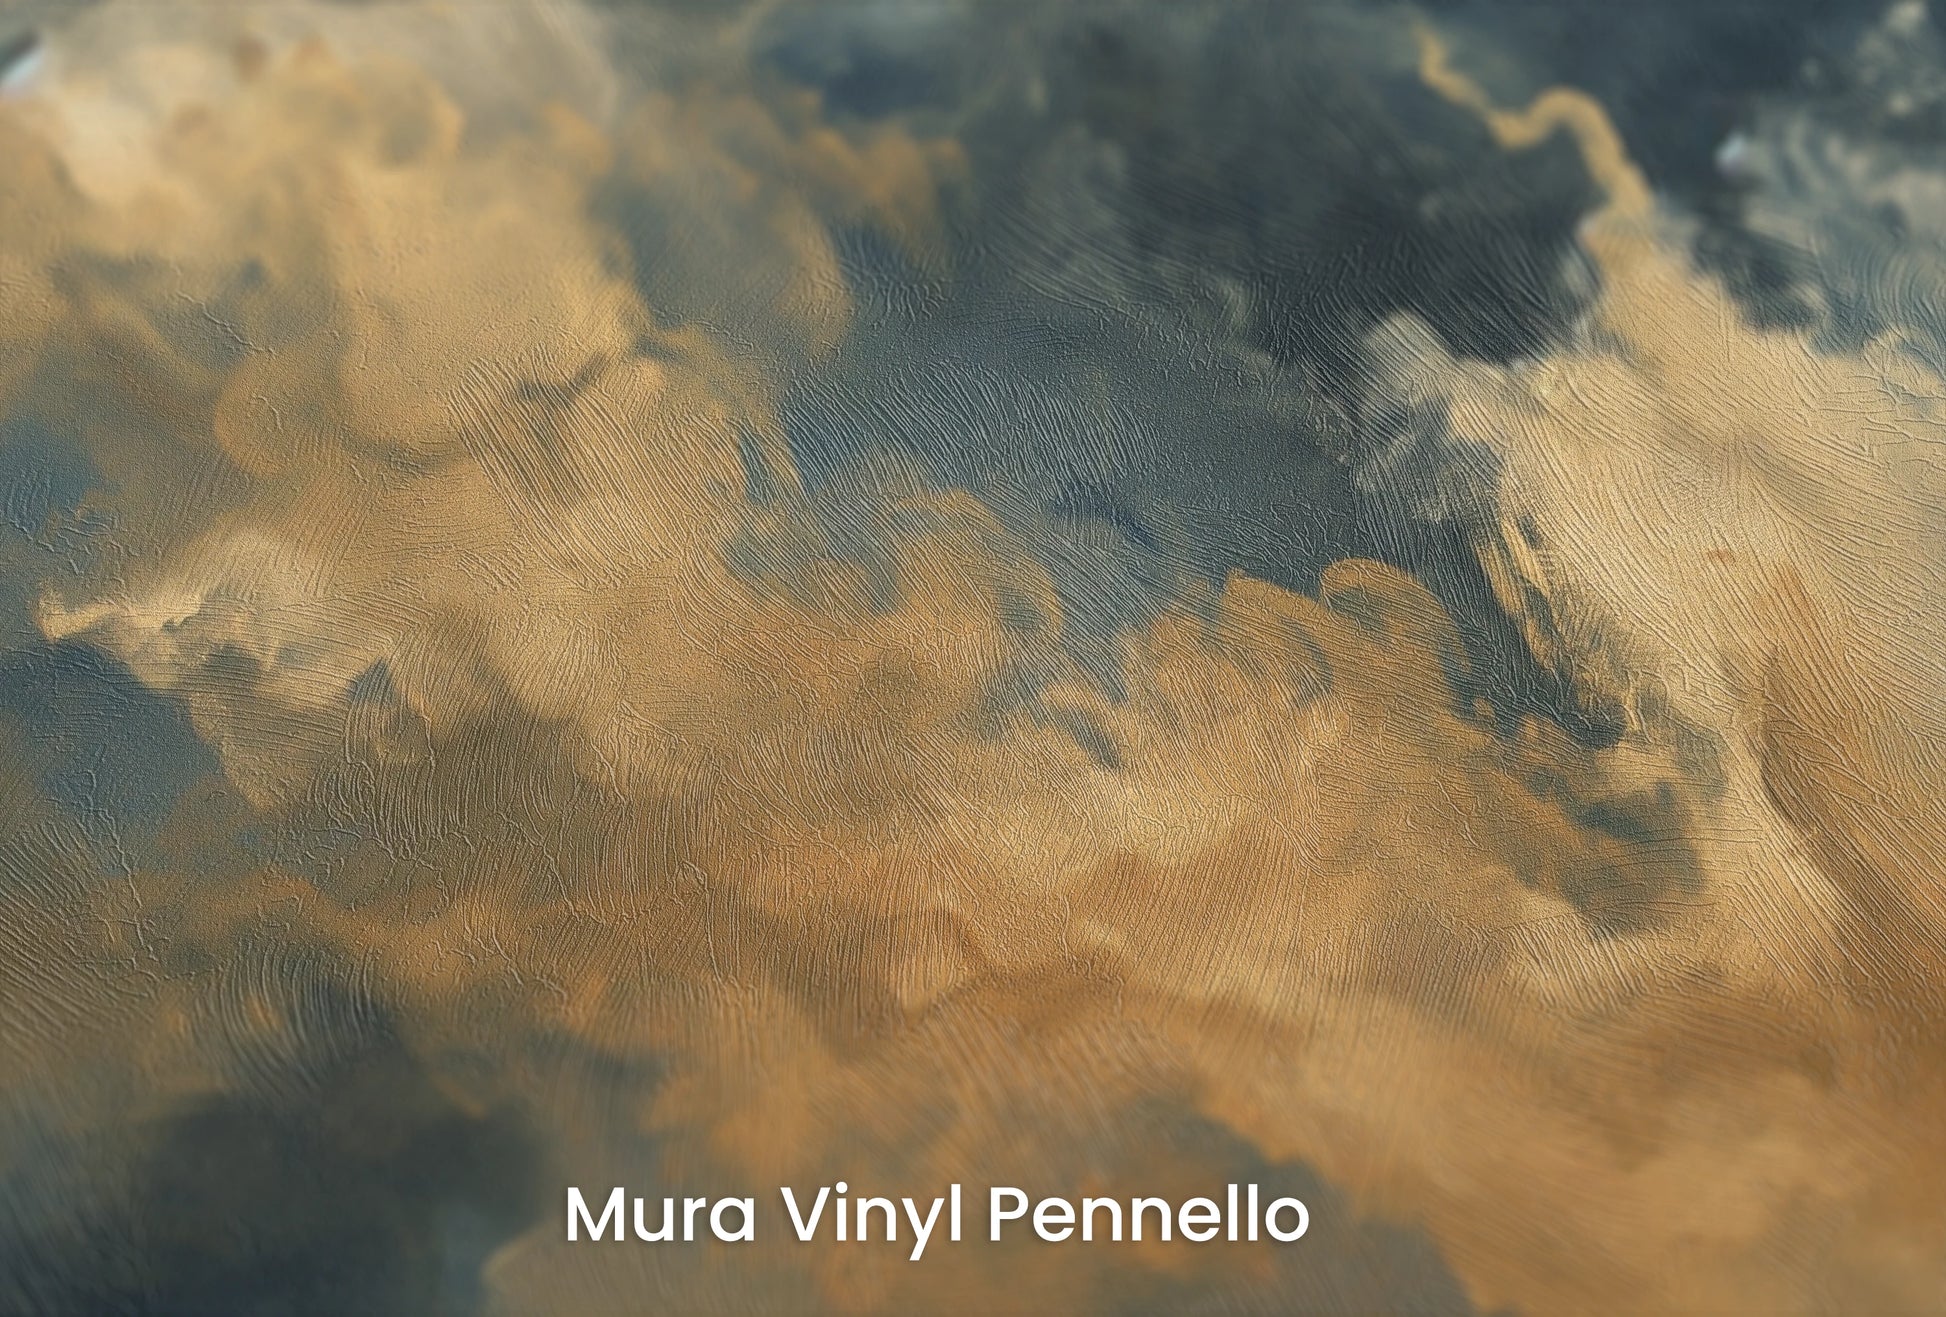 Zbliżenie na artystyczną fototapetę o nazwie Storm's Embrace na podłożu Mura Vinyl Pennello - faktura pociągnięć pędzla malarskiego.